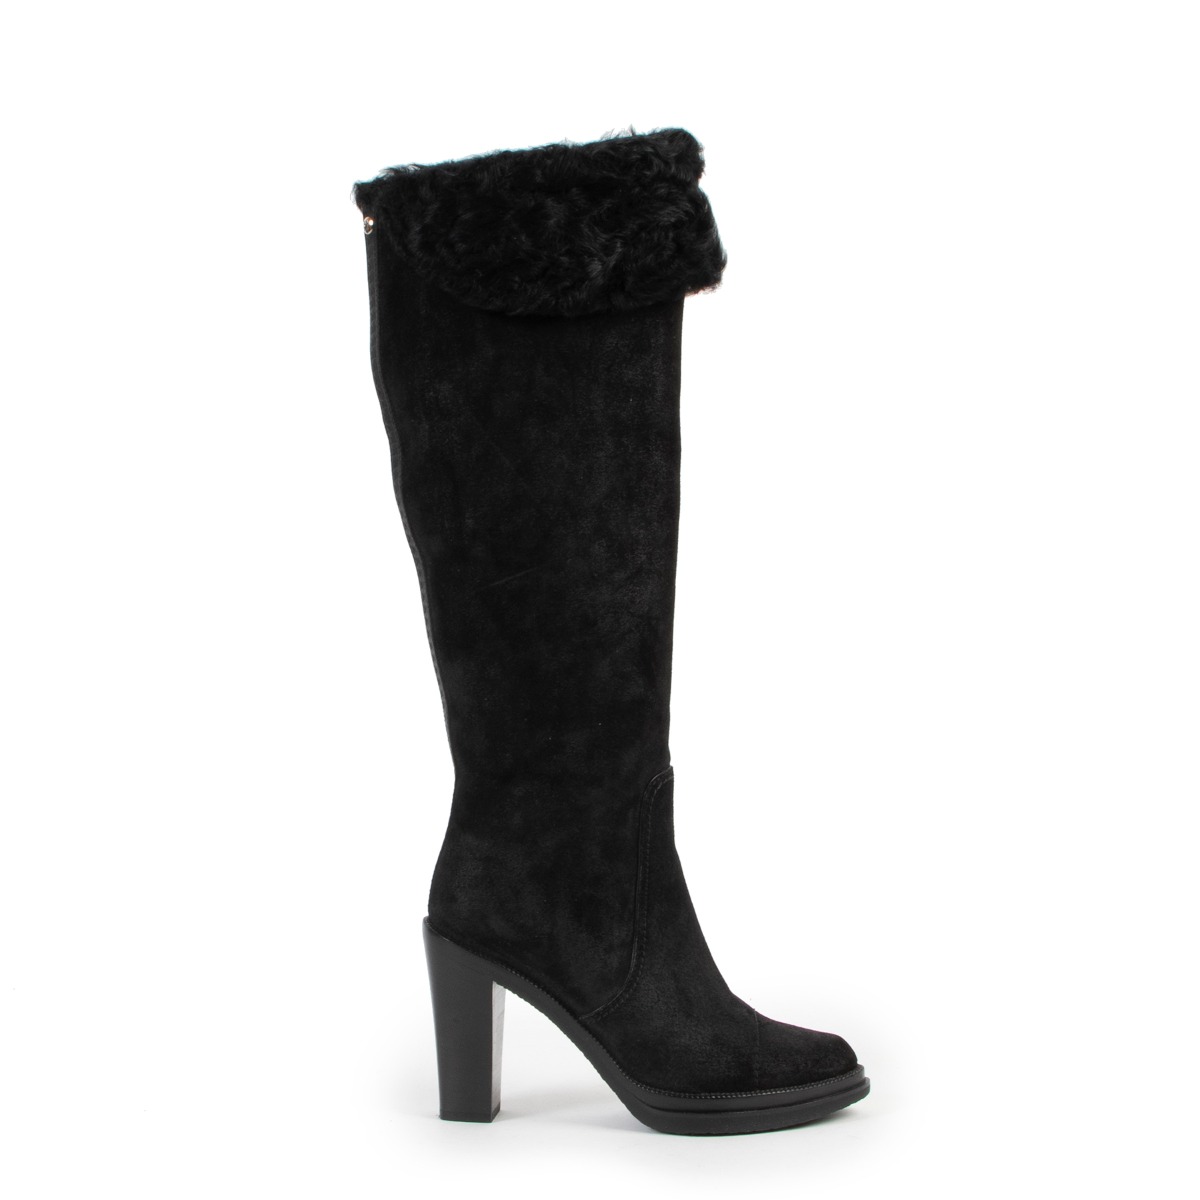 Snow boots Louis Vuitton Black size 37.5 EU in Suede - 31059961